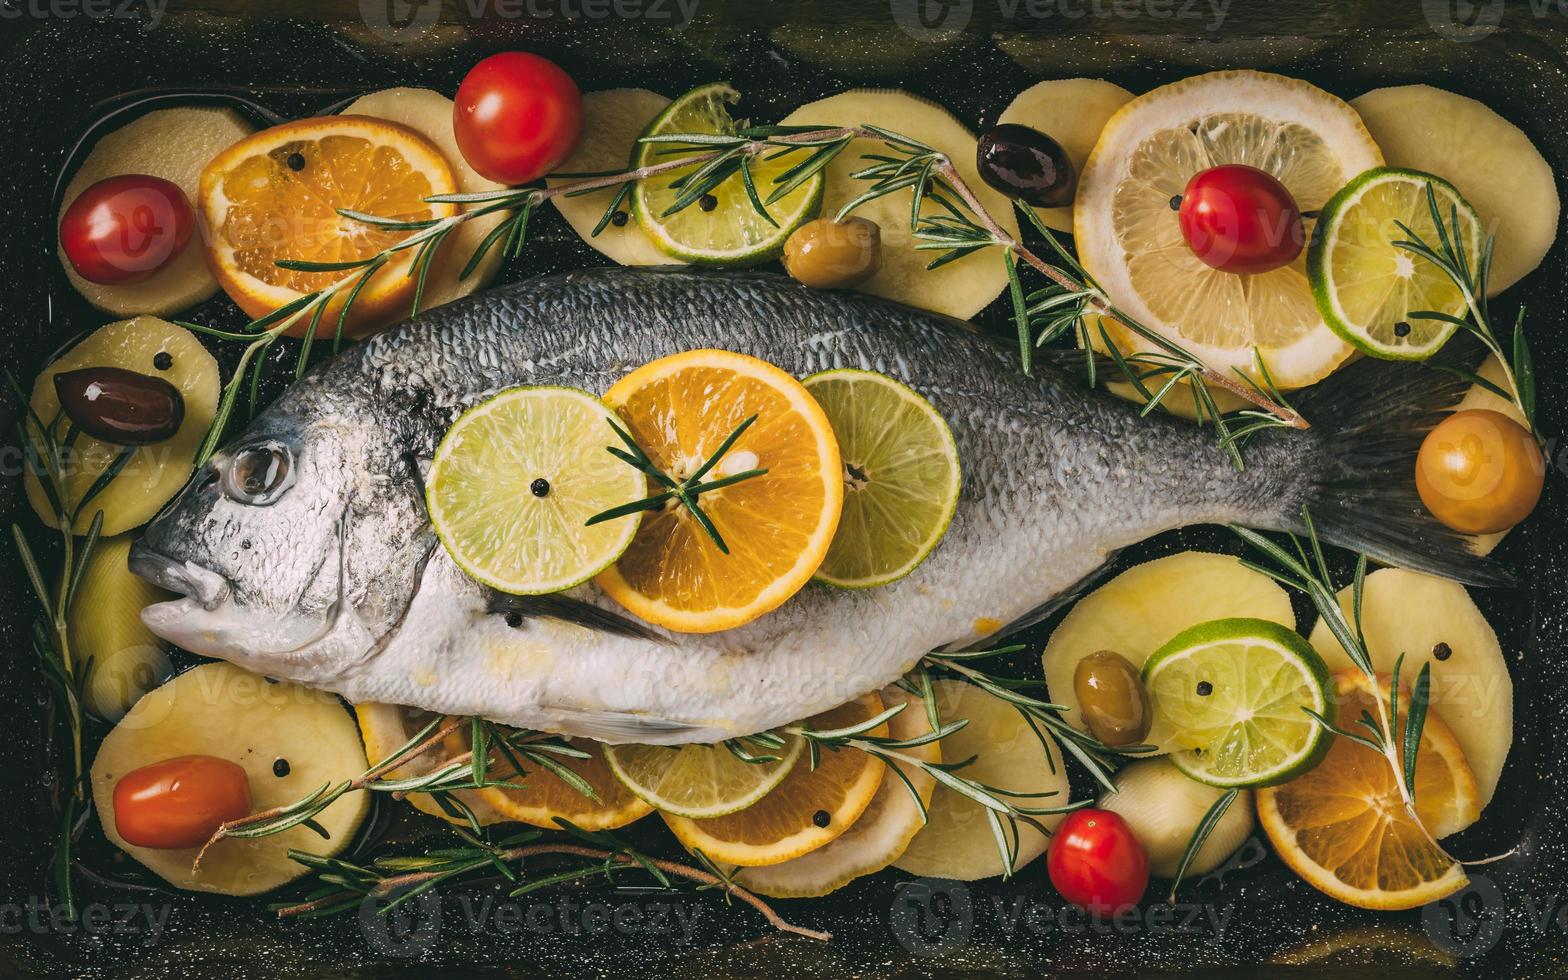 poisson daurade dans la plaque de cuisson prêt à être cuit avec pommes de terre, romarin, citron, orange, olives, tomates, oignon et citron vert. orata frais, préparation de poisson dorade photo